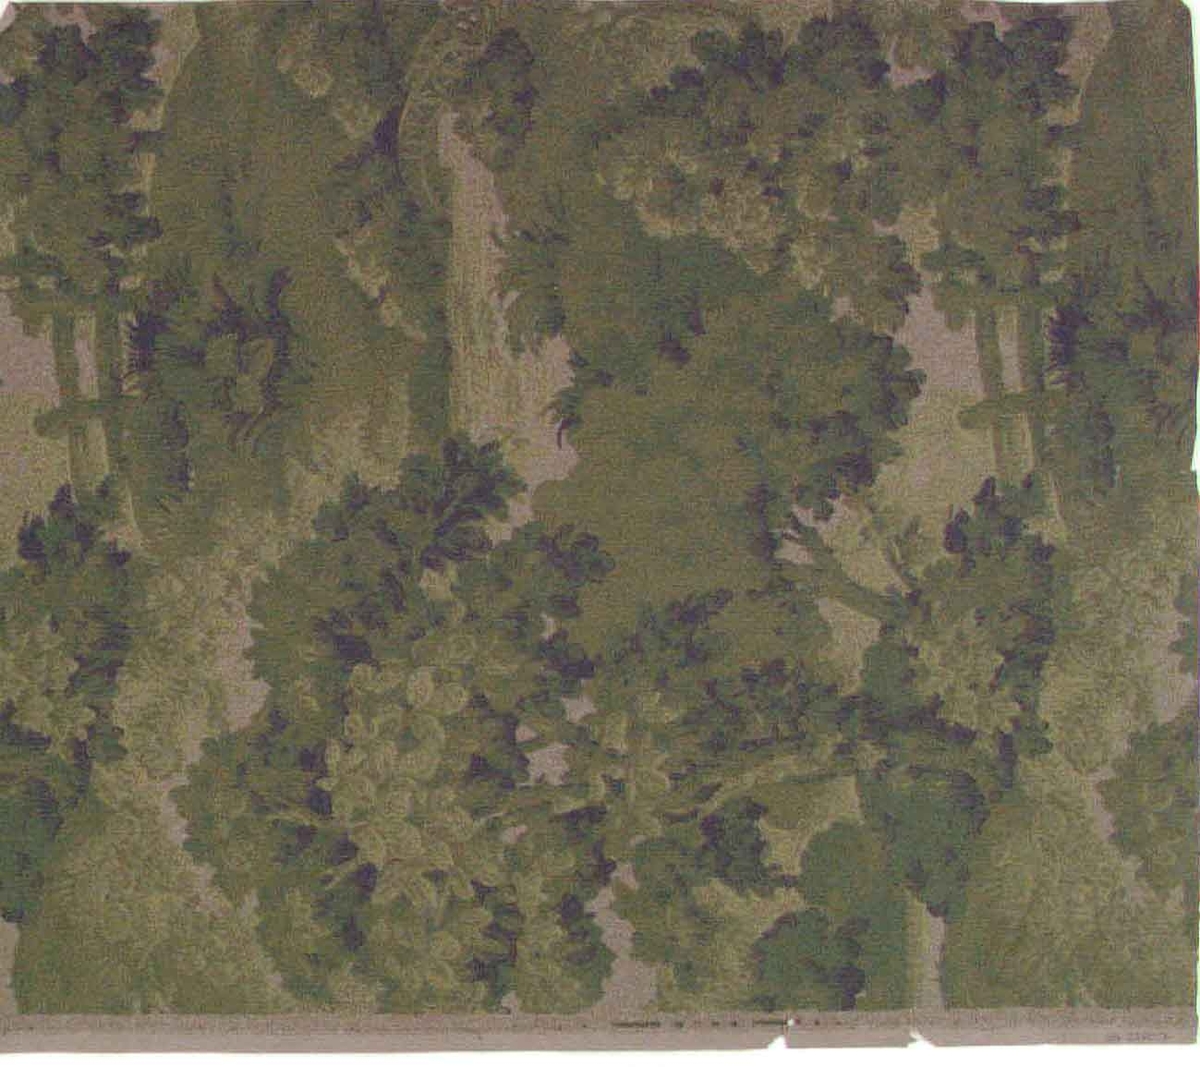 Ett ytfyllande växtmotiv med träd och buskar dekorerat med någon bro mm. Tryck i flera mörkgröna nyanser på ett gråbeige genomfärgat papper.





Tillägg historik:
Tapet från en gammal släktgård som byggdes ut 1886.